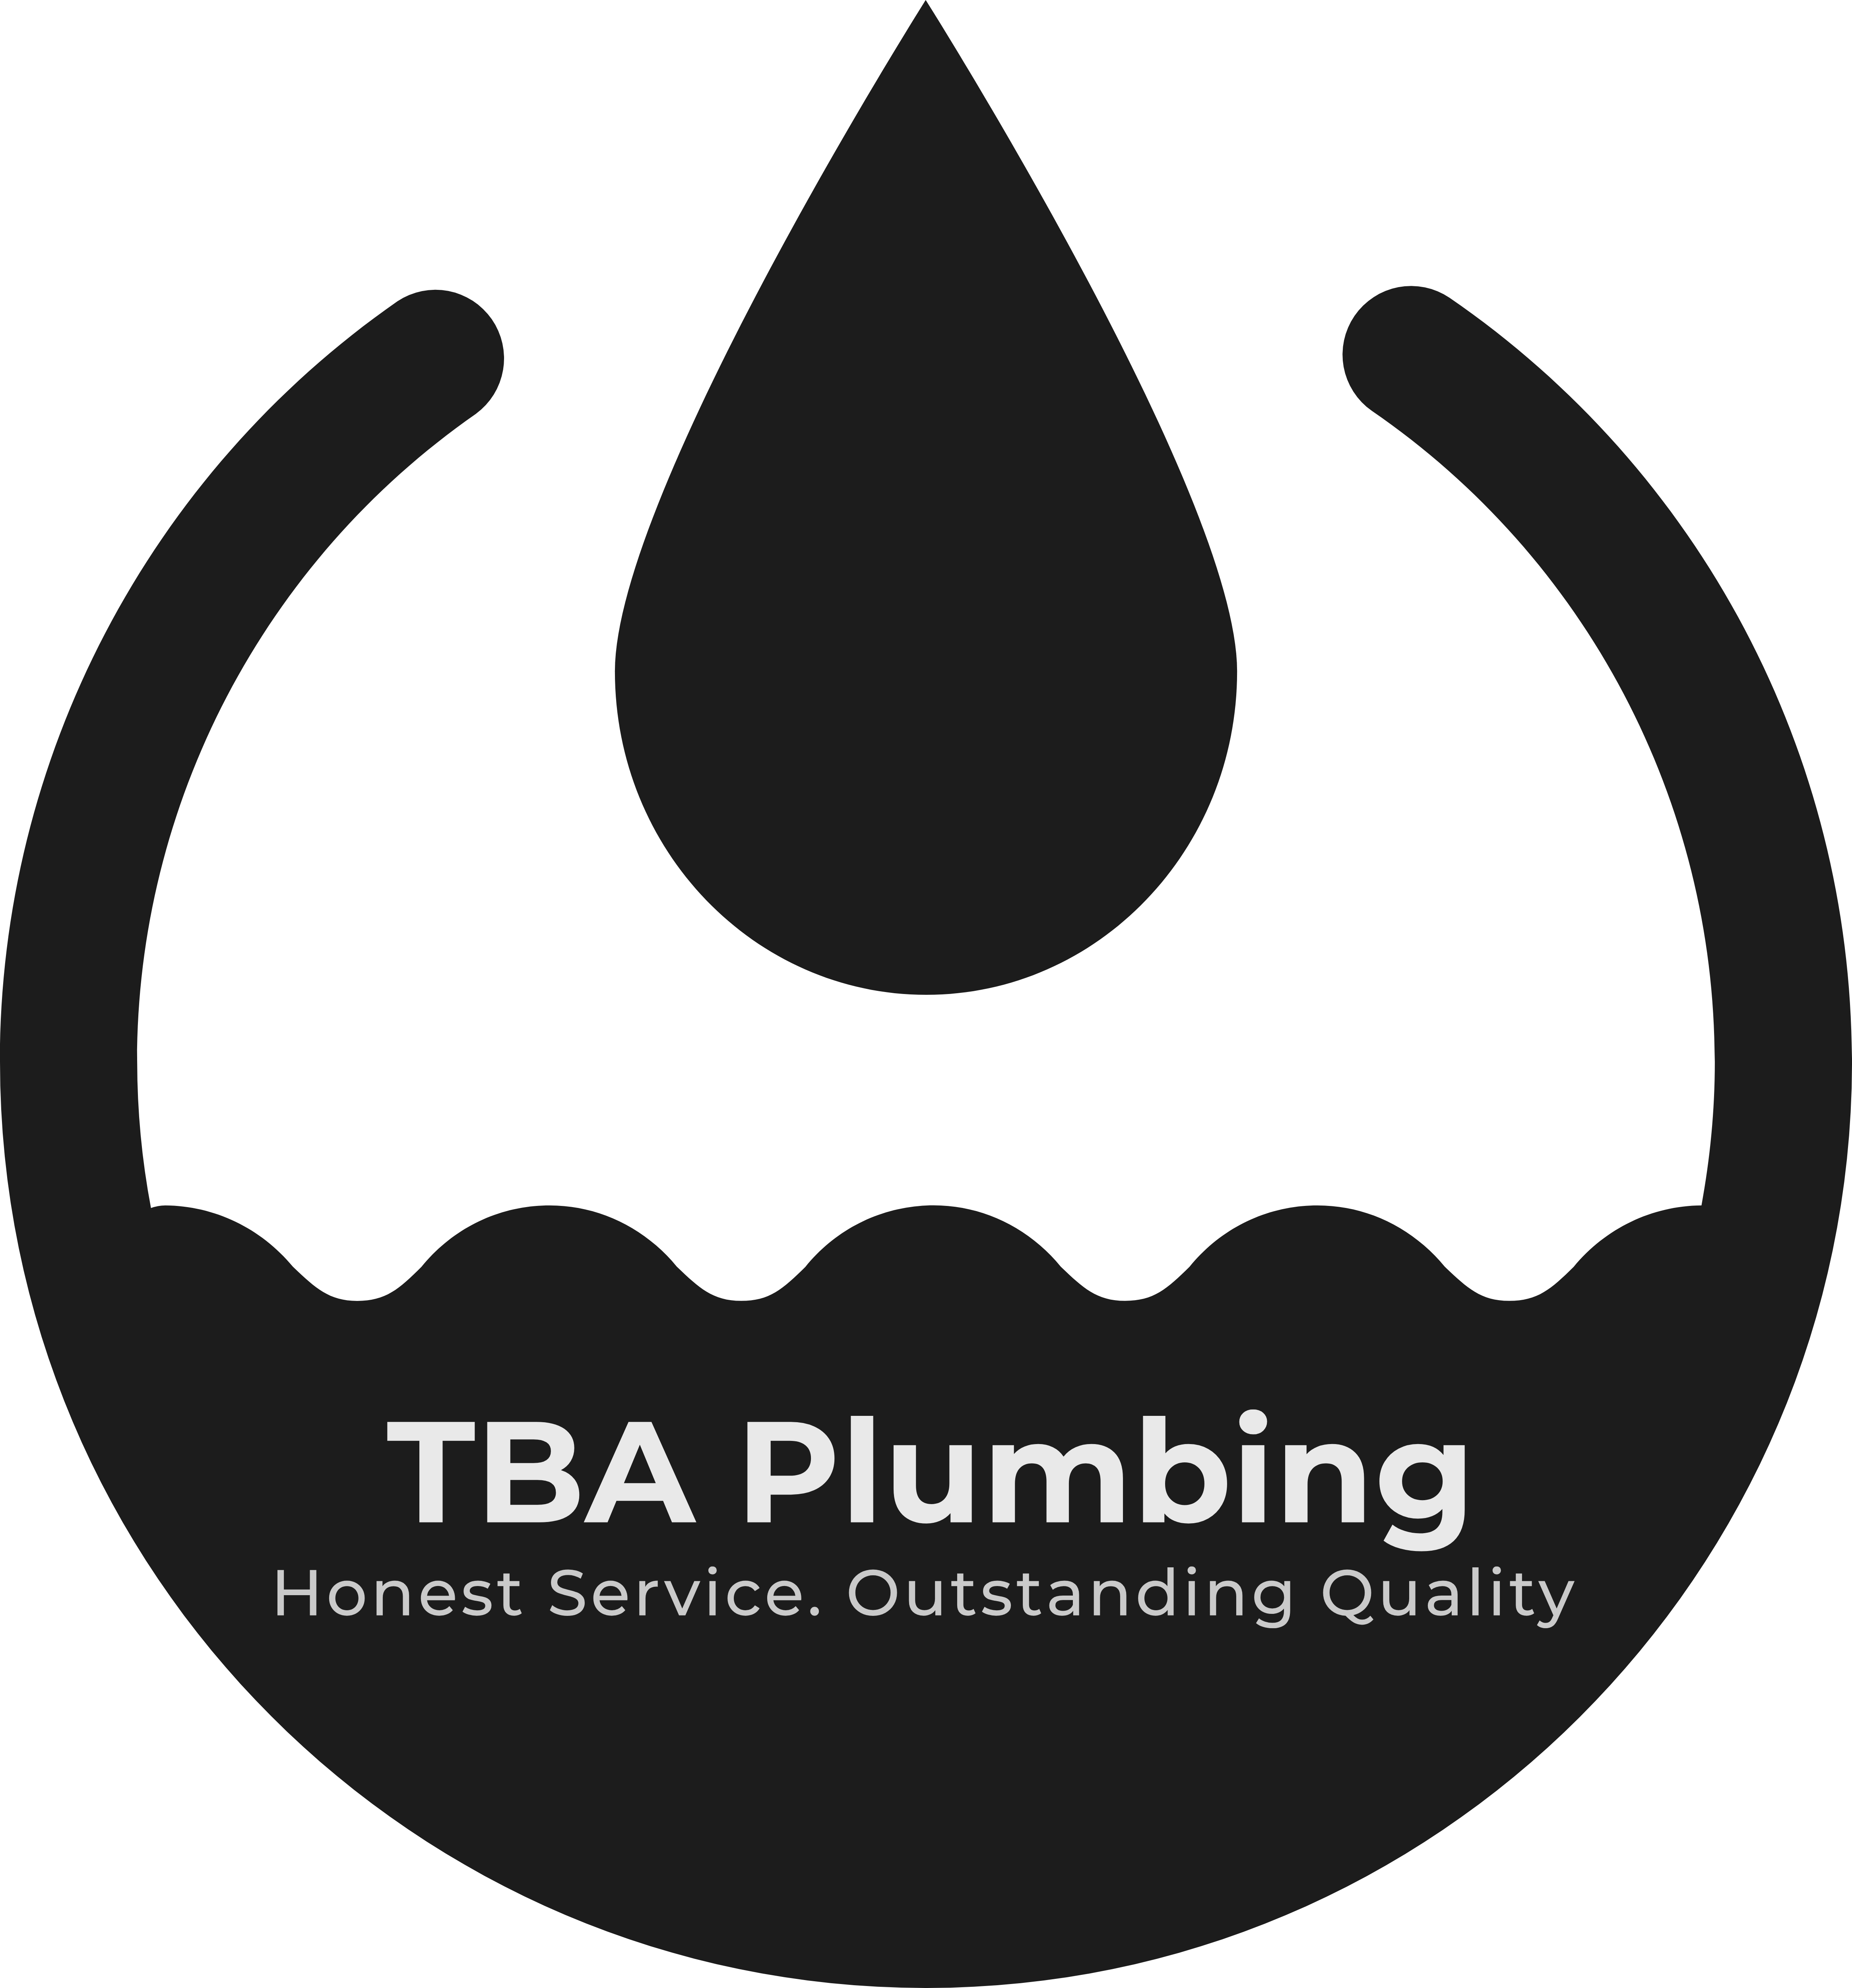 TBA Plumbing's logo